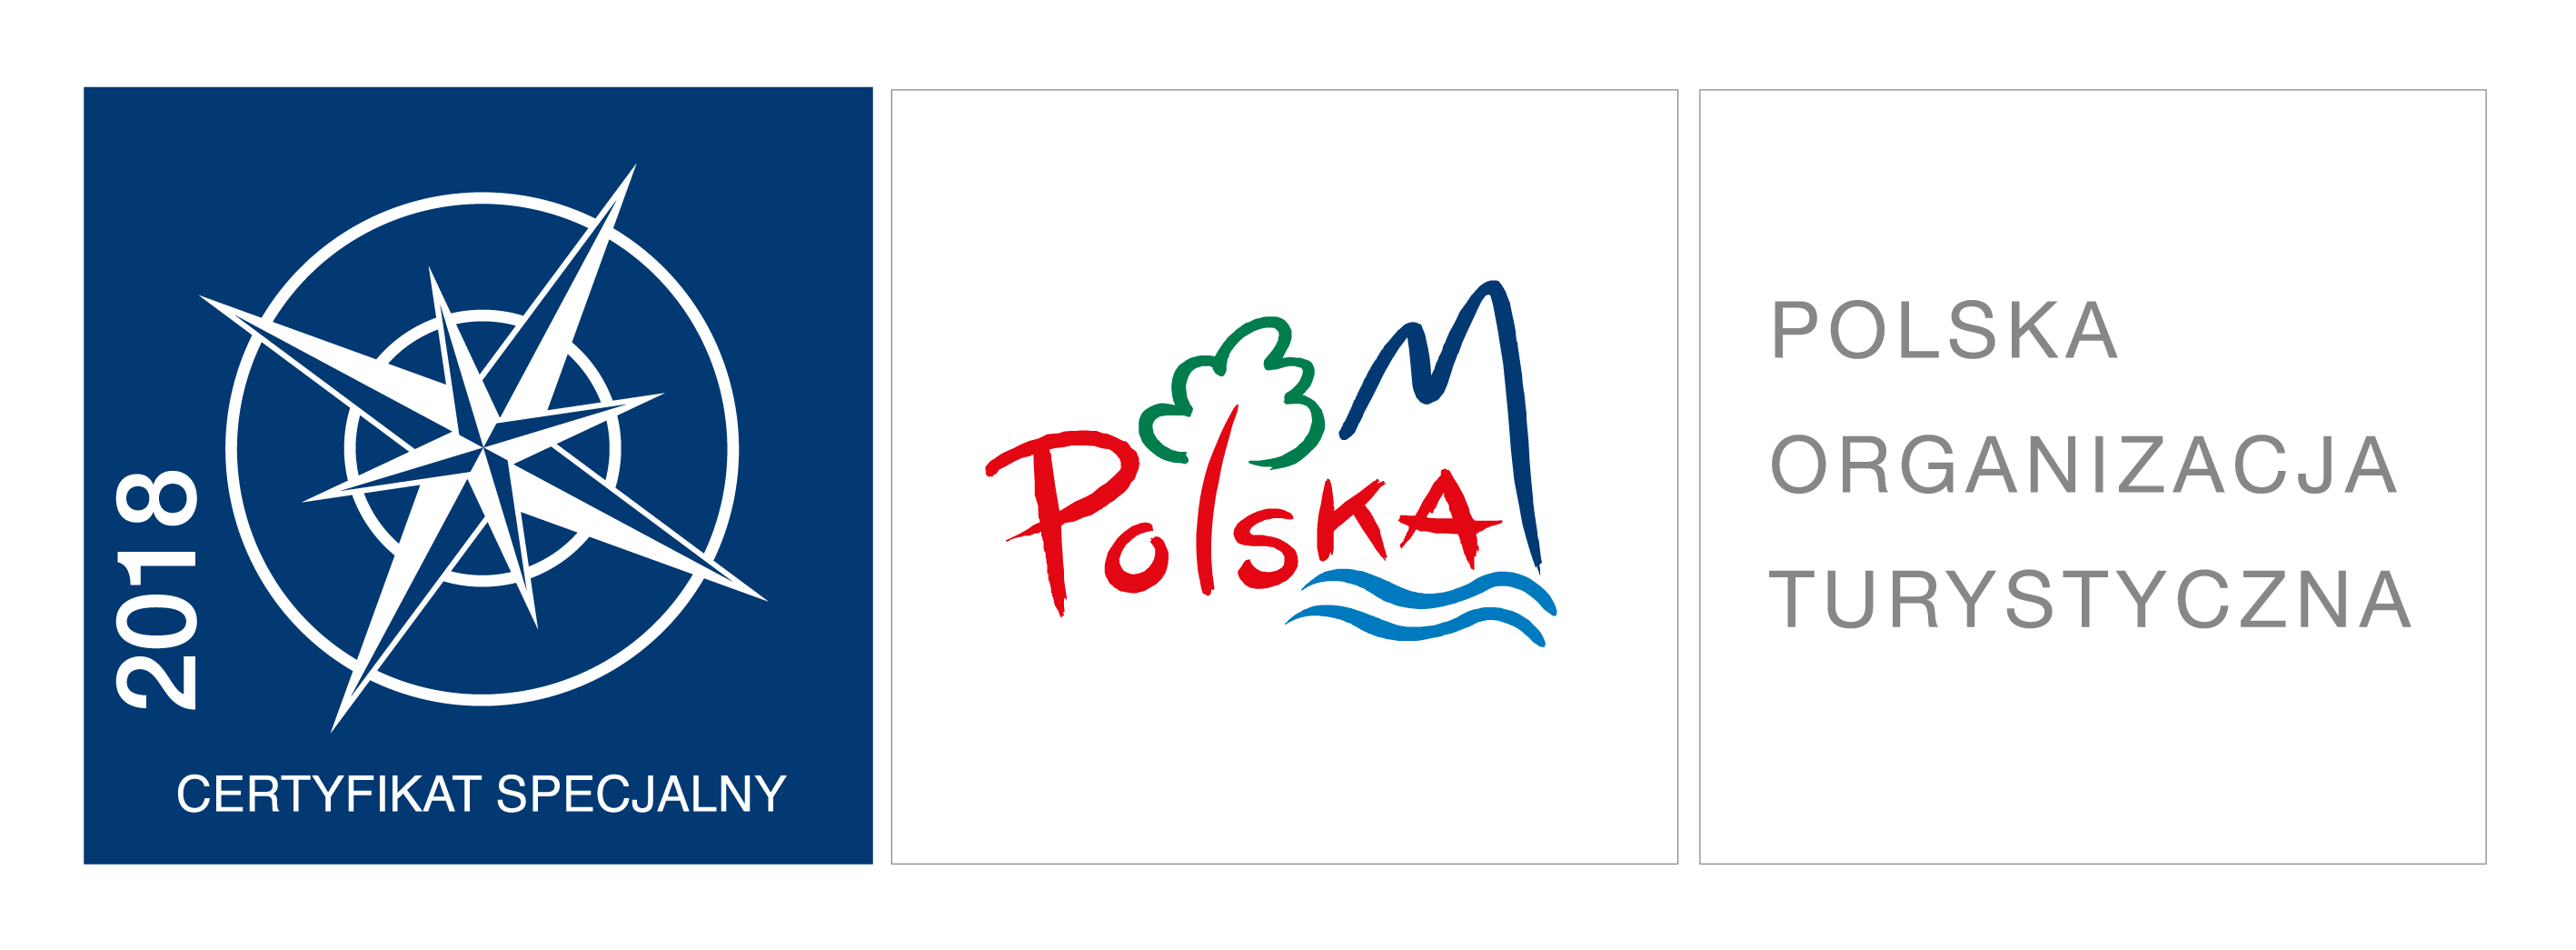 Logo-Certyfikat Specjalny 2018 Polska Organizacja Turystyczna